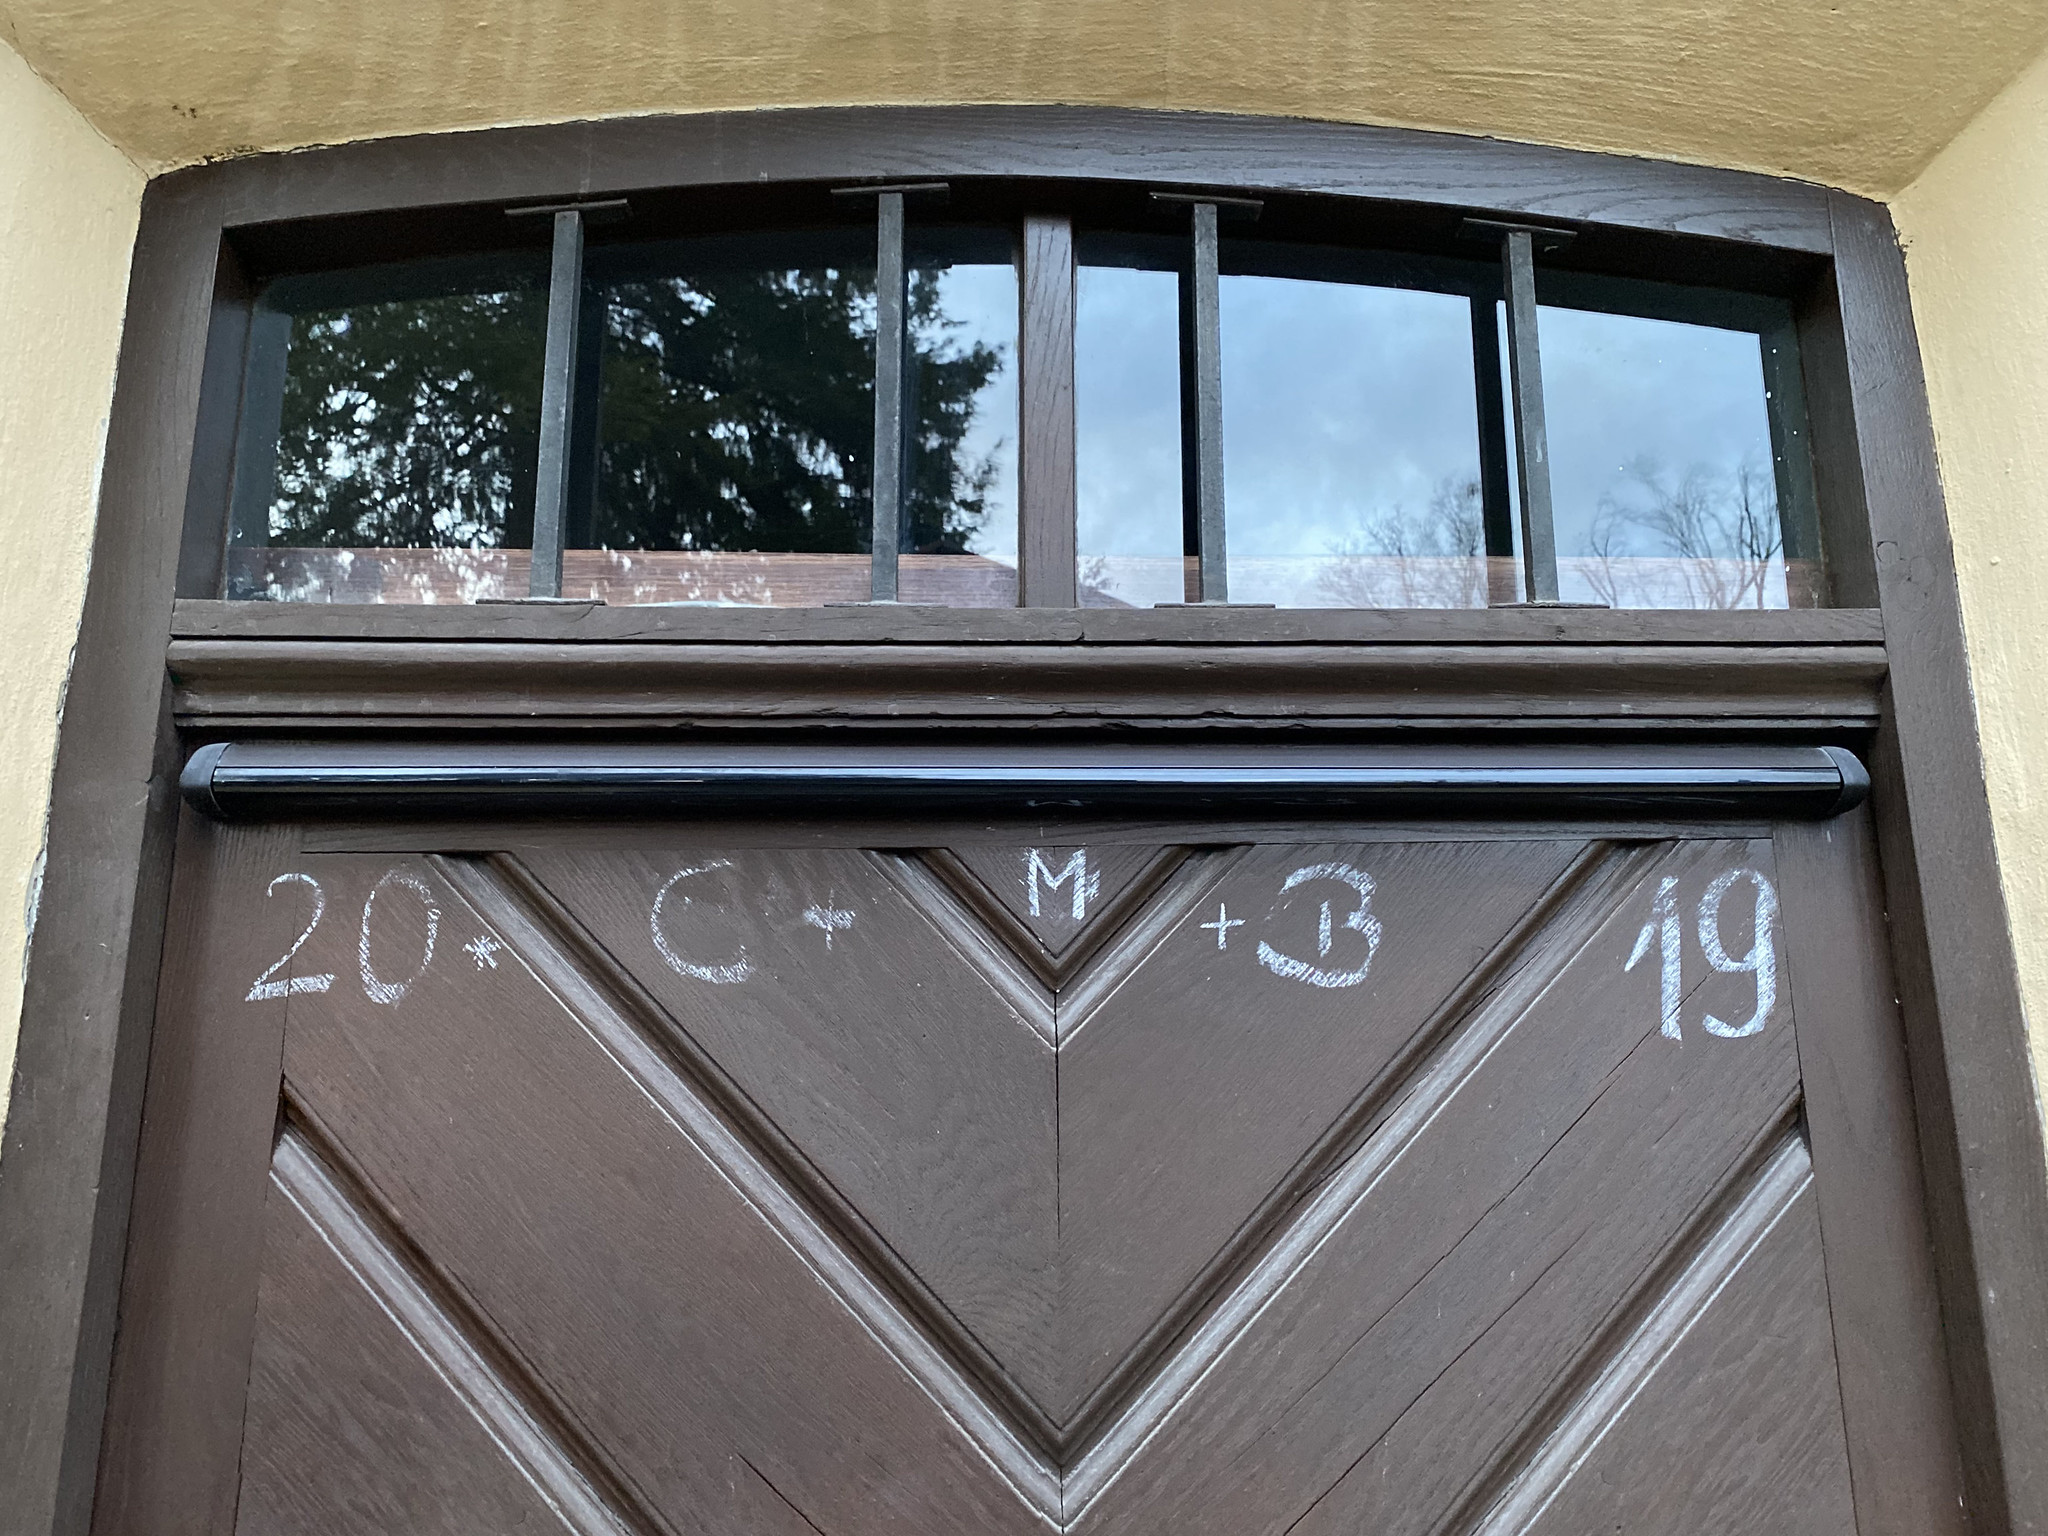 Vai esi kādreiz manījis uz ēkas ieejas durvīm simbolus „K+M+B” kā īpaši izvēlētu zīmju virknējumu?